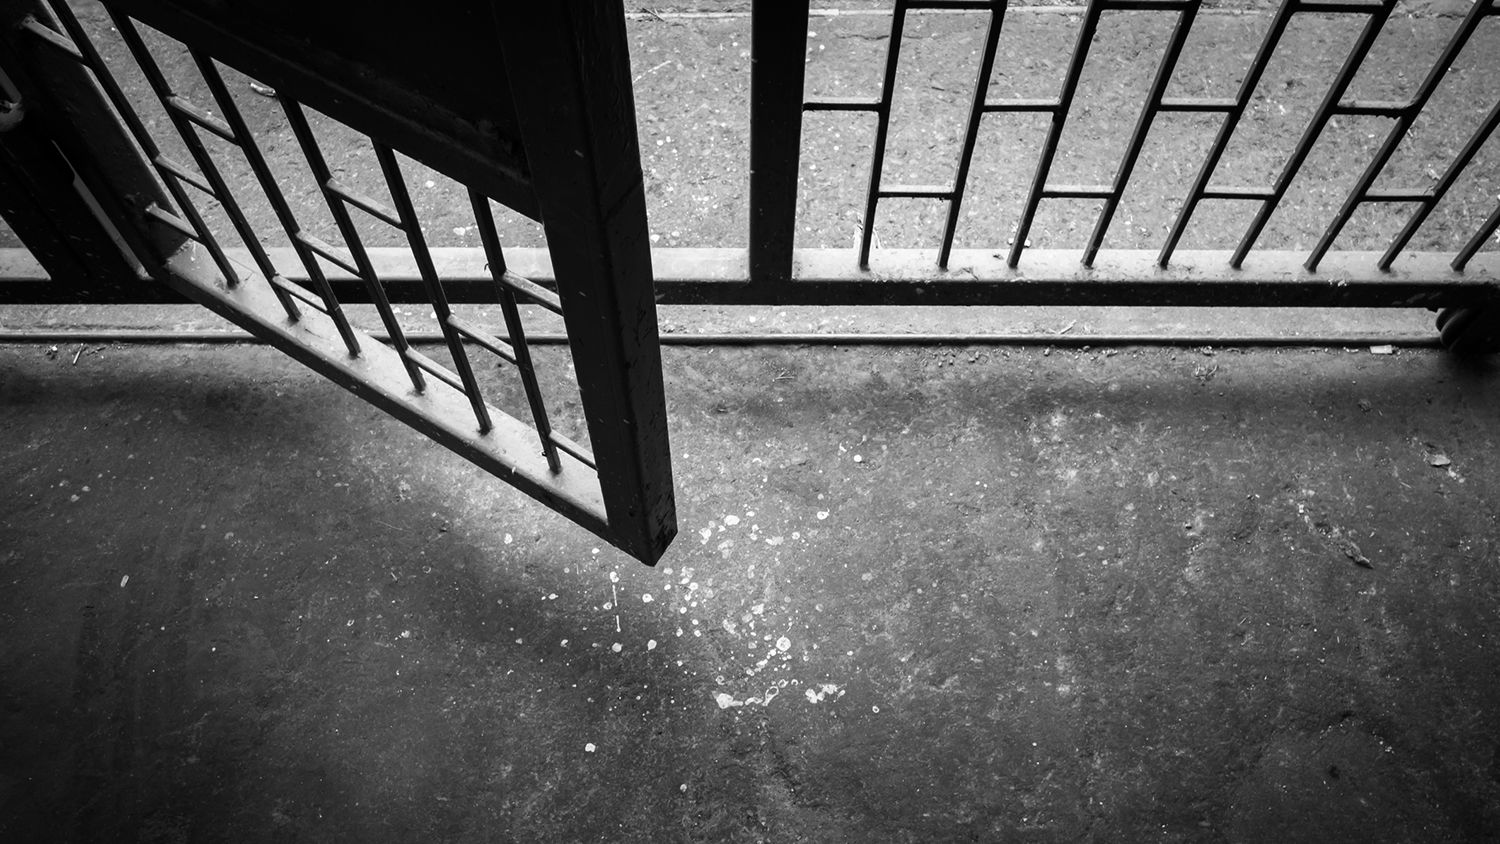 Megszökött a martonvásári börtön egyik rabja